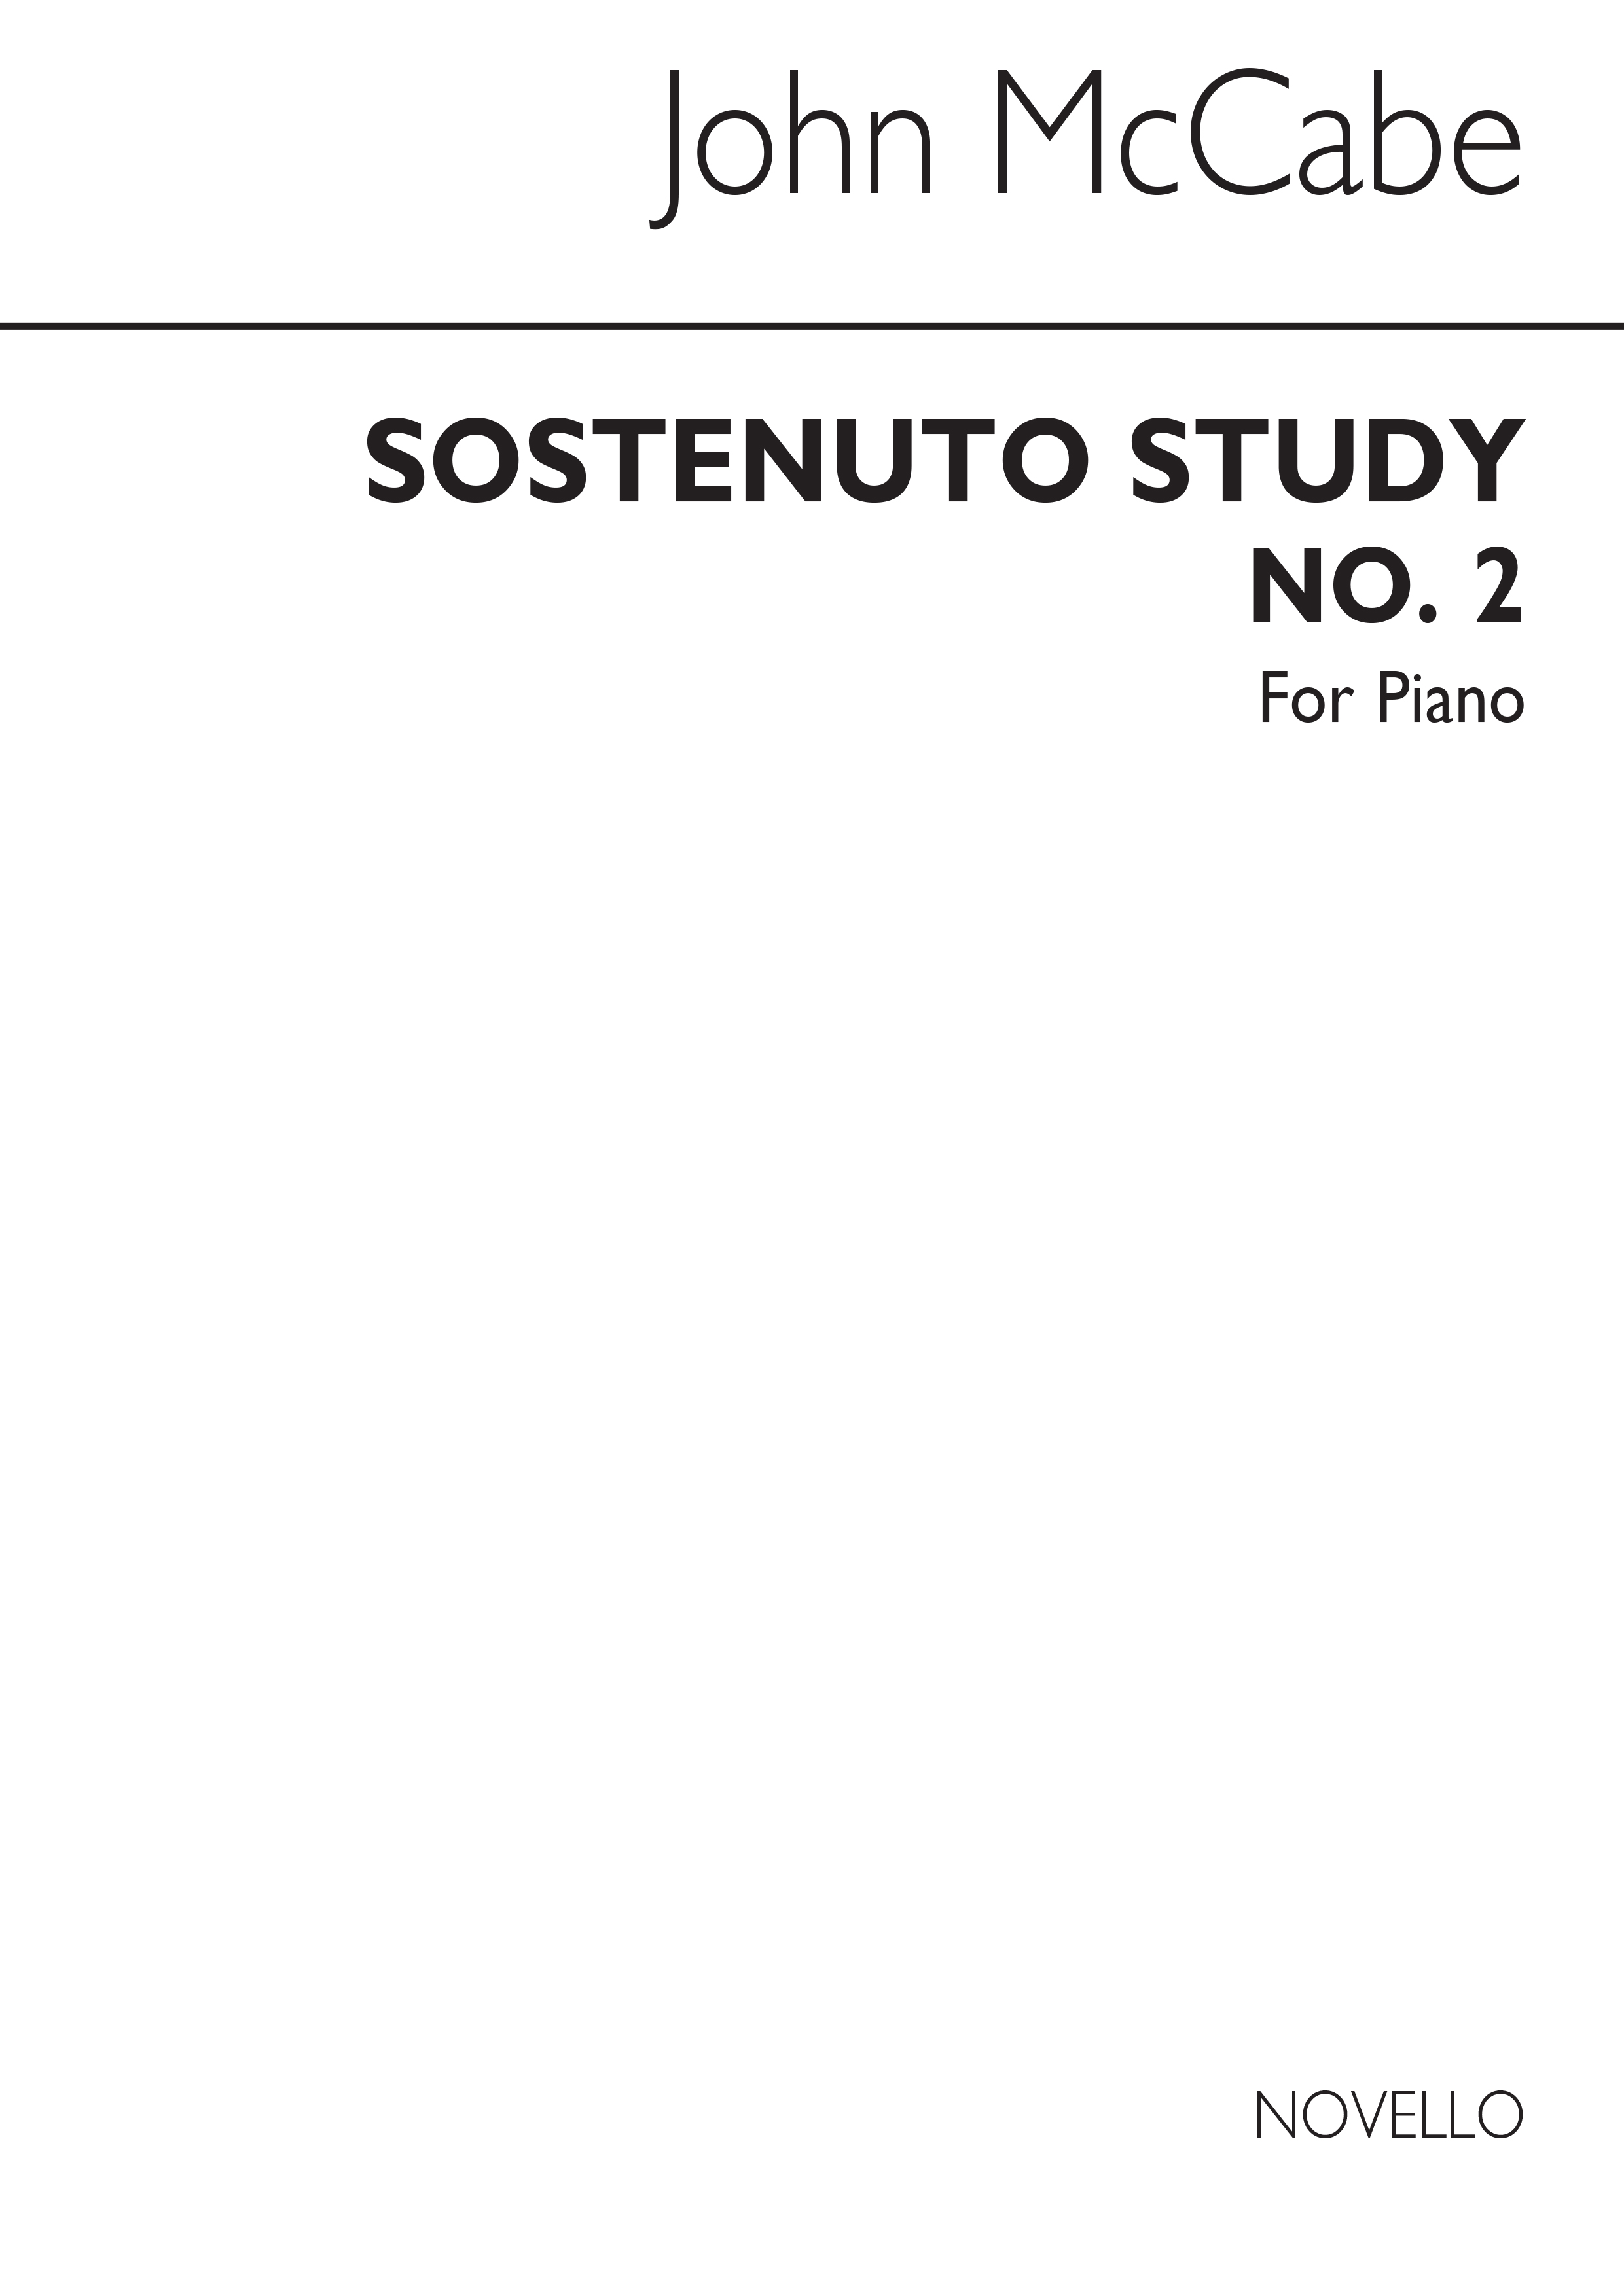 McCabe: Sostenuto Study No.2 for Piano